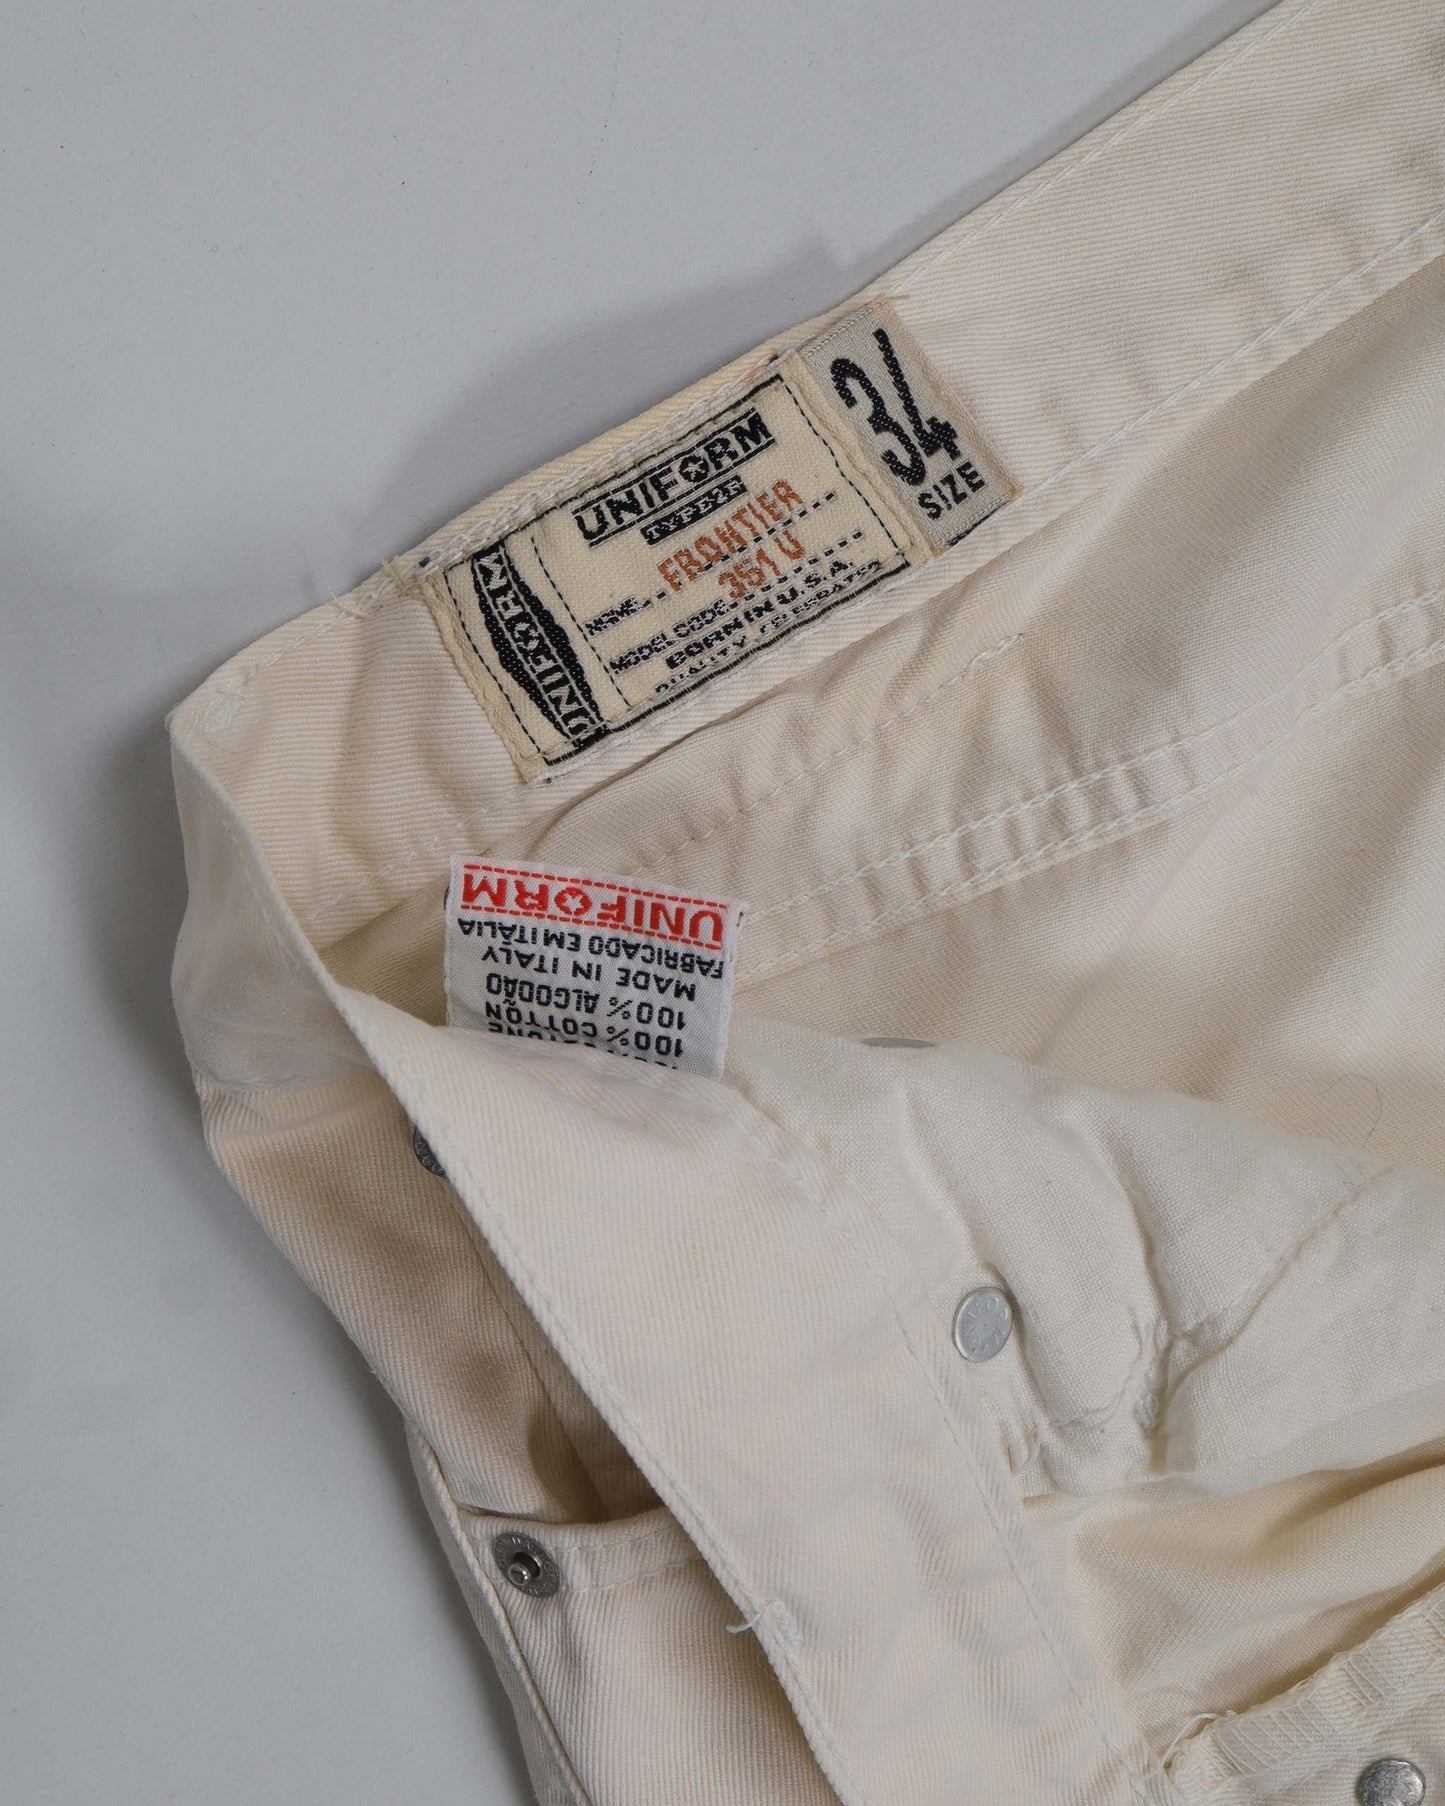 Vintage Uniform-Denim-Jeans